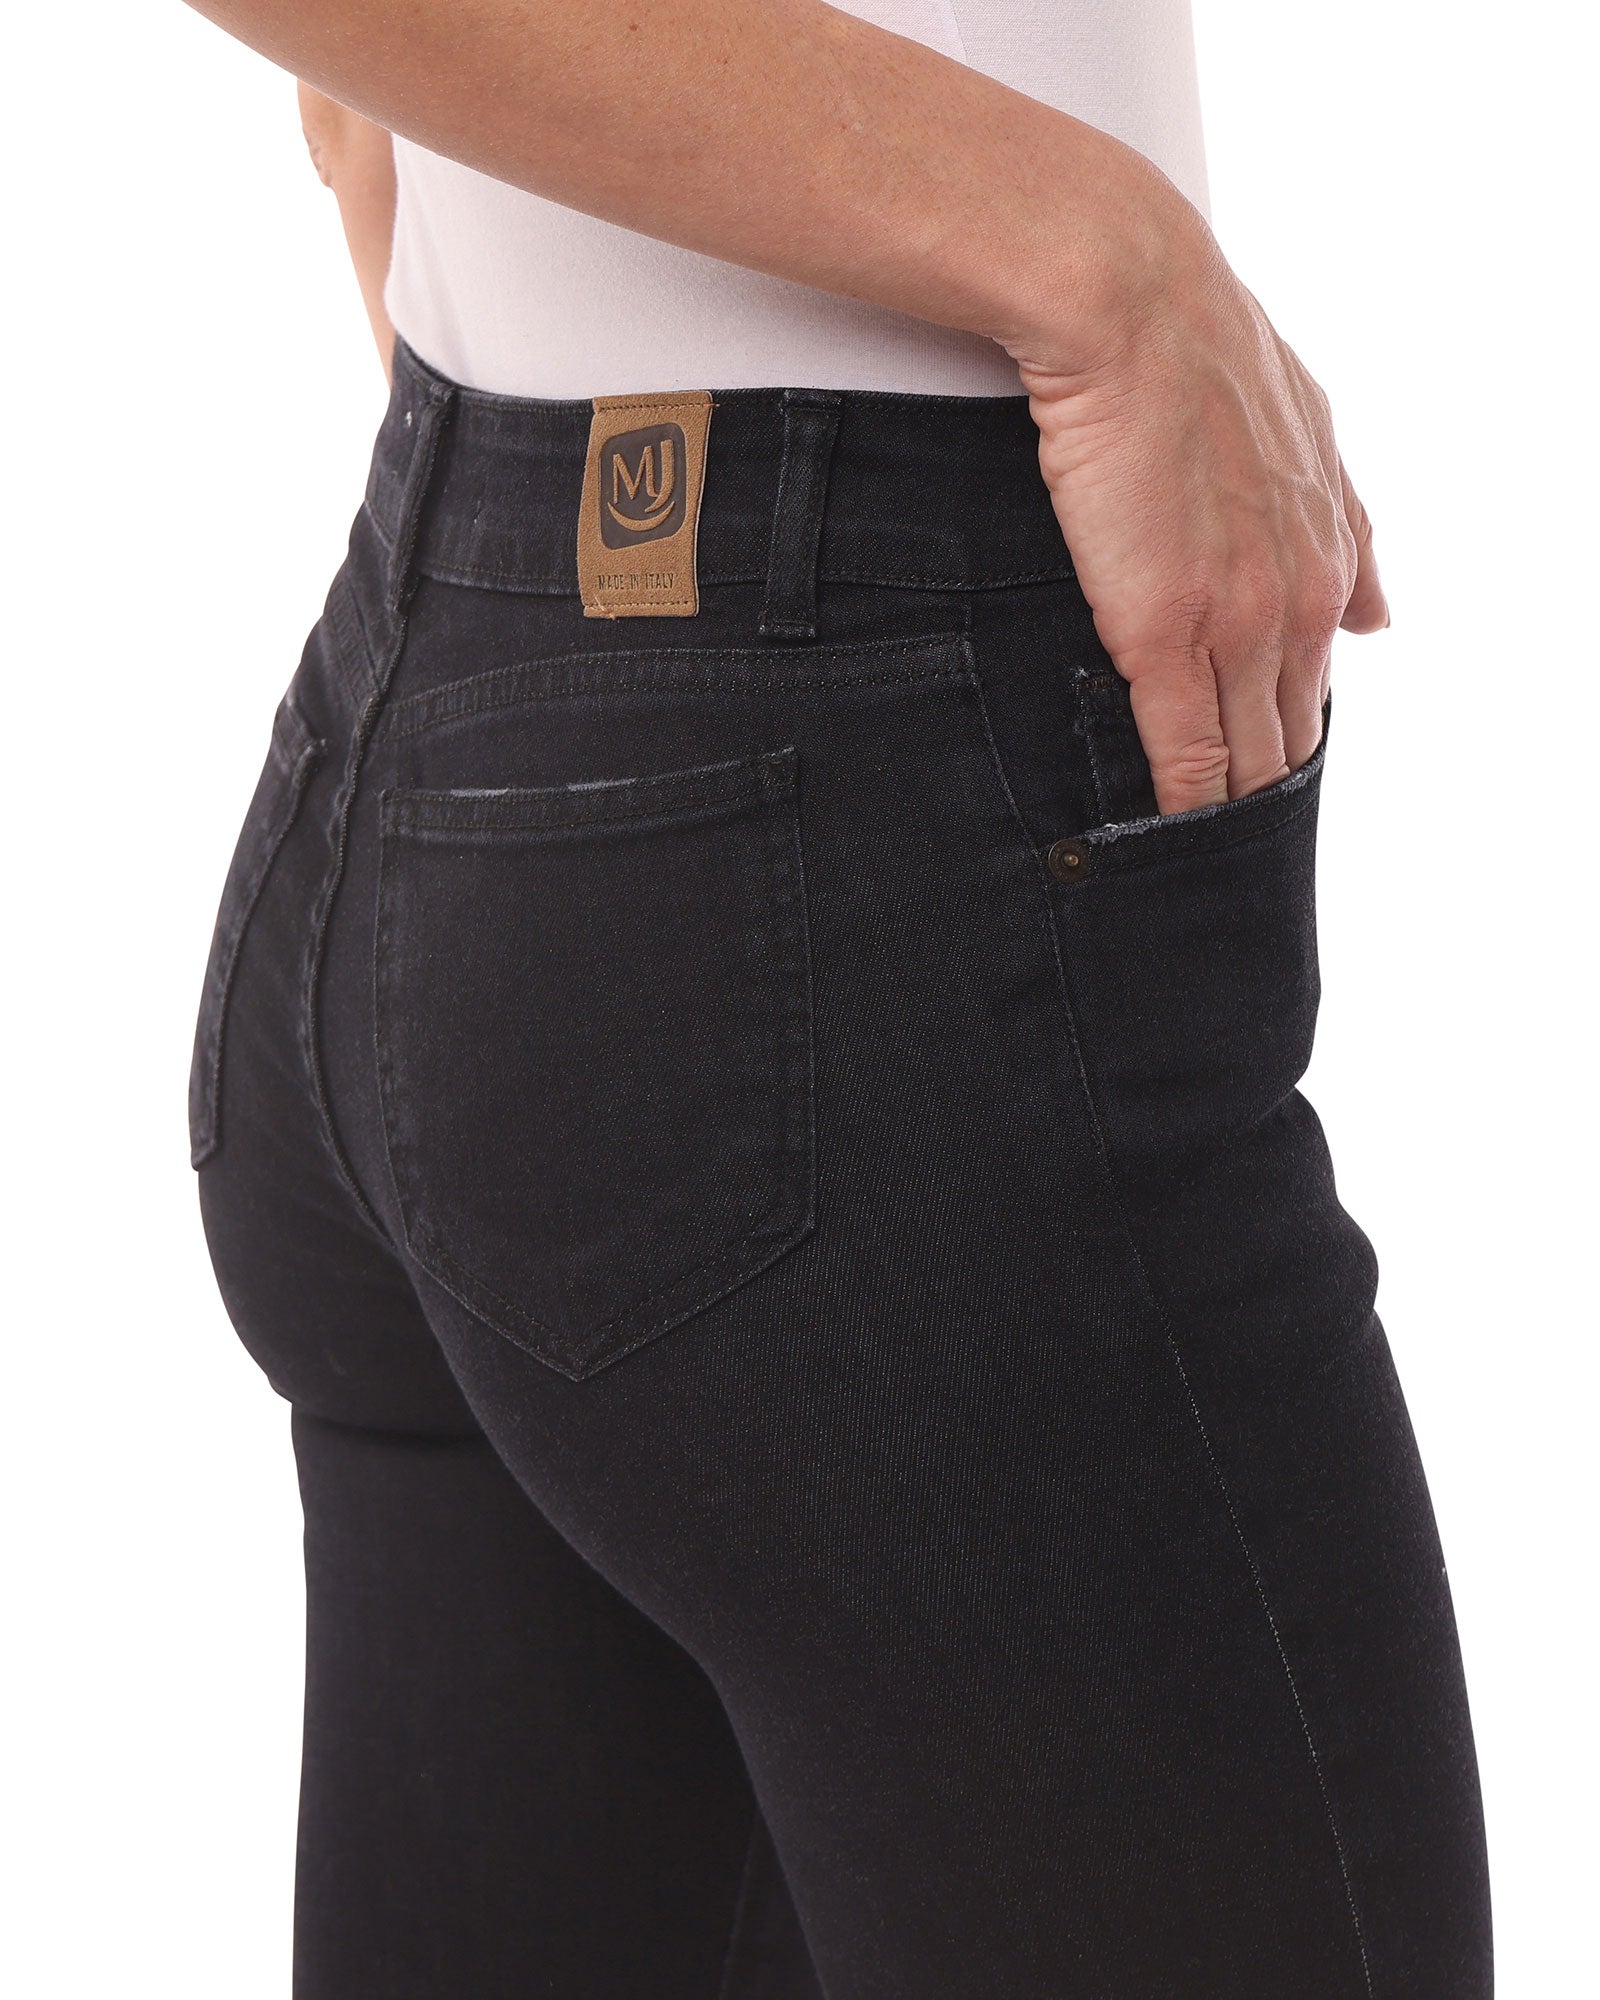 Jeans Donna Nero, Slim Fit, Vita Media - Made in Italy